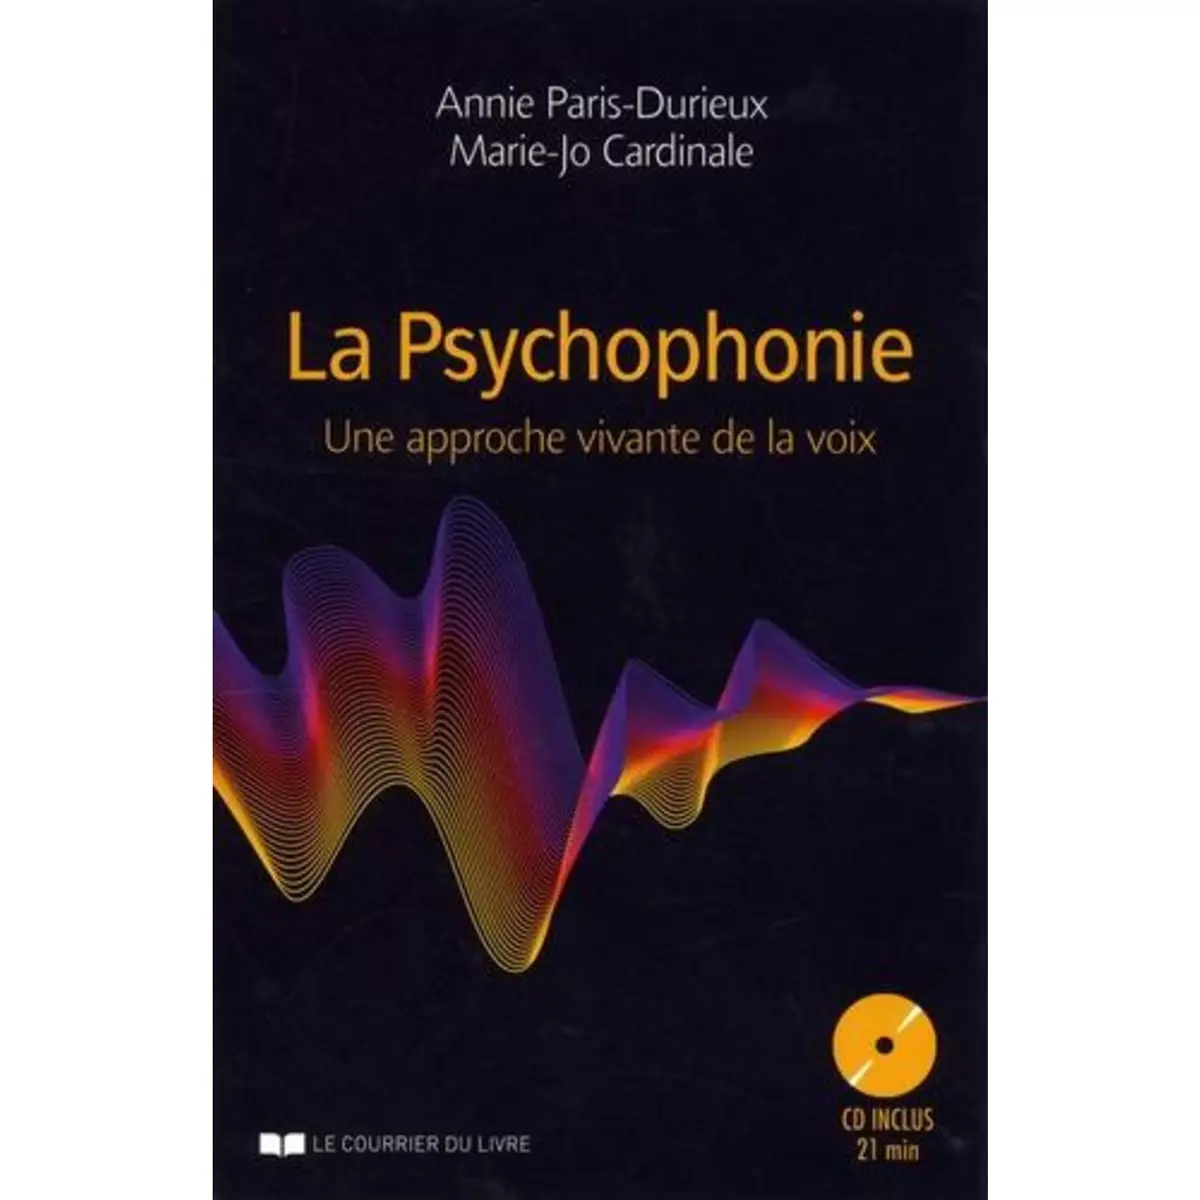  LA PSYCHOPHONIE. UNE APPROCHE VIVANTE DE LA VOIX, AVEC 1 CD AUDIO, Paris-Durieux Annie